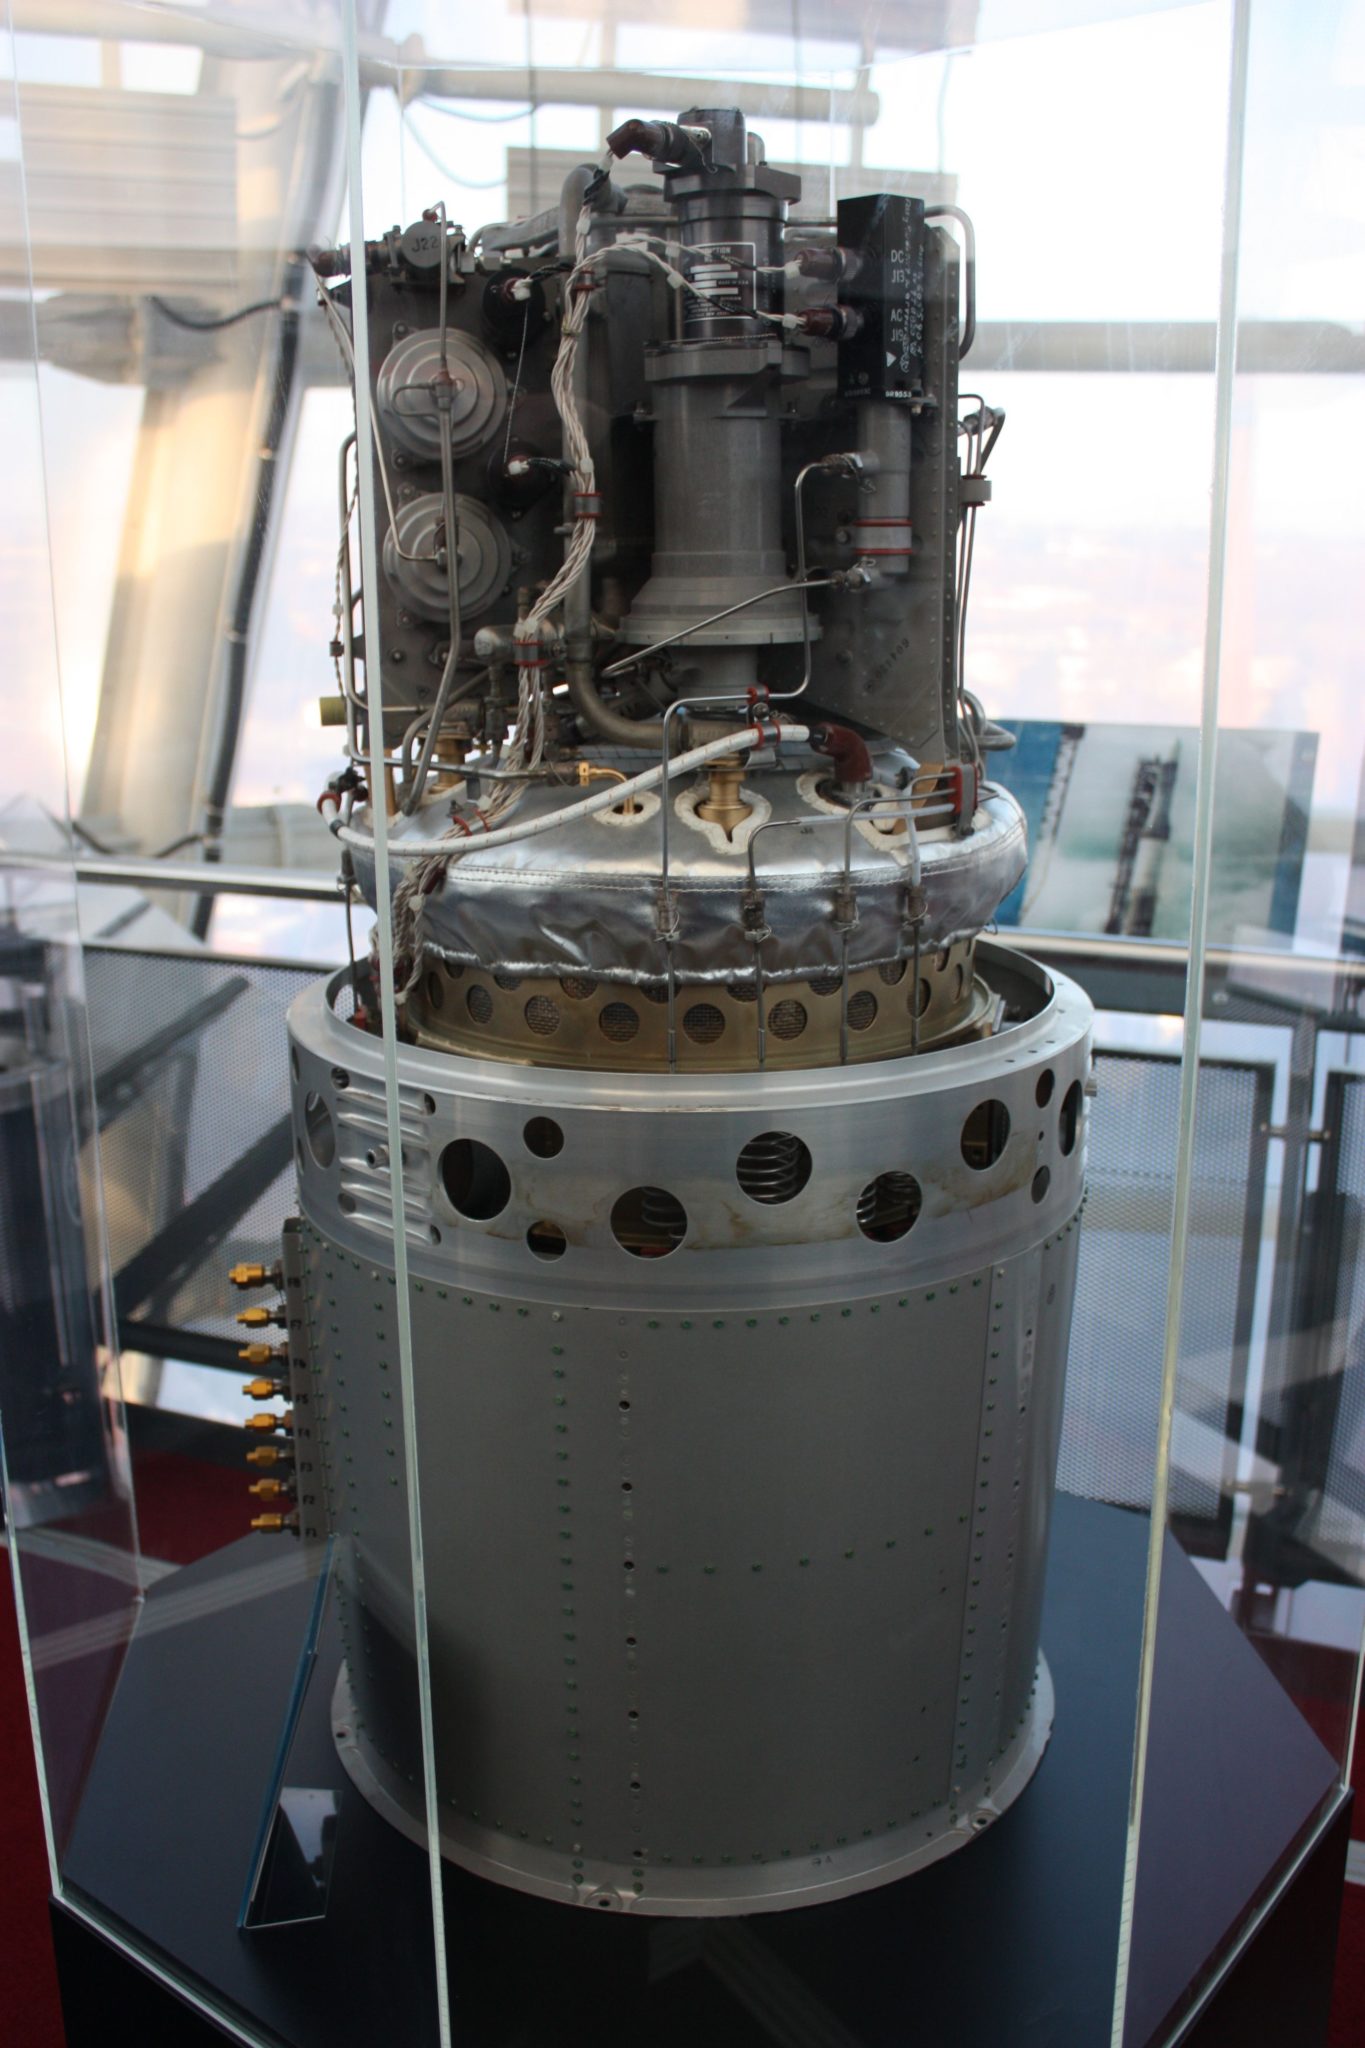 Pila de combustible de hidrógeno de las misiones Apolo. Fuente: Wikipedia. Autor: James Humphreys - SalopianJames CC BY-SA 3.0.